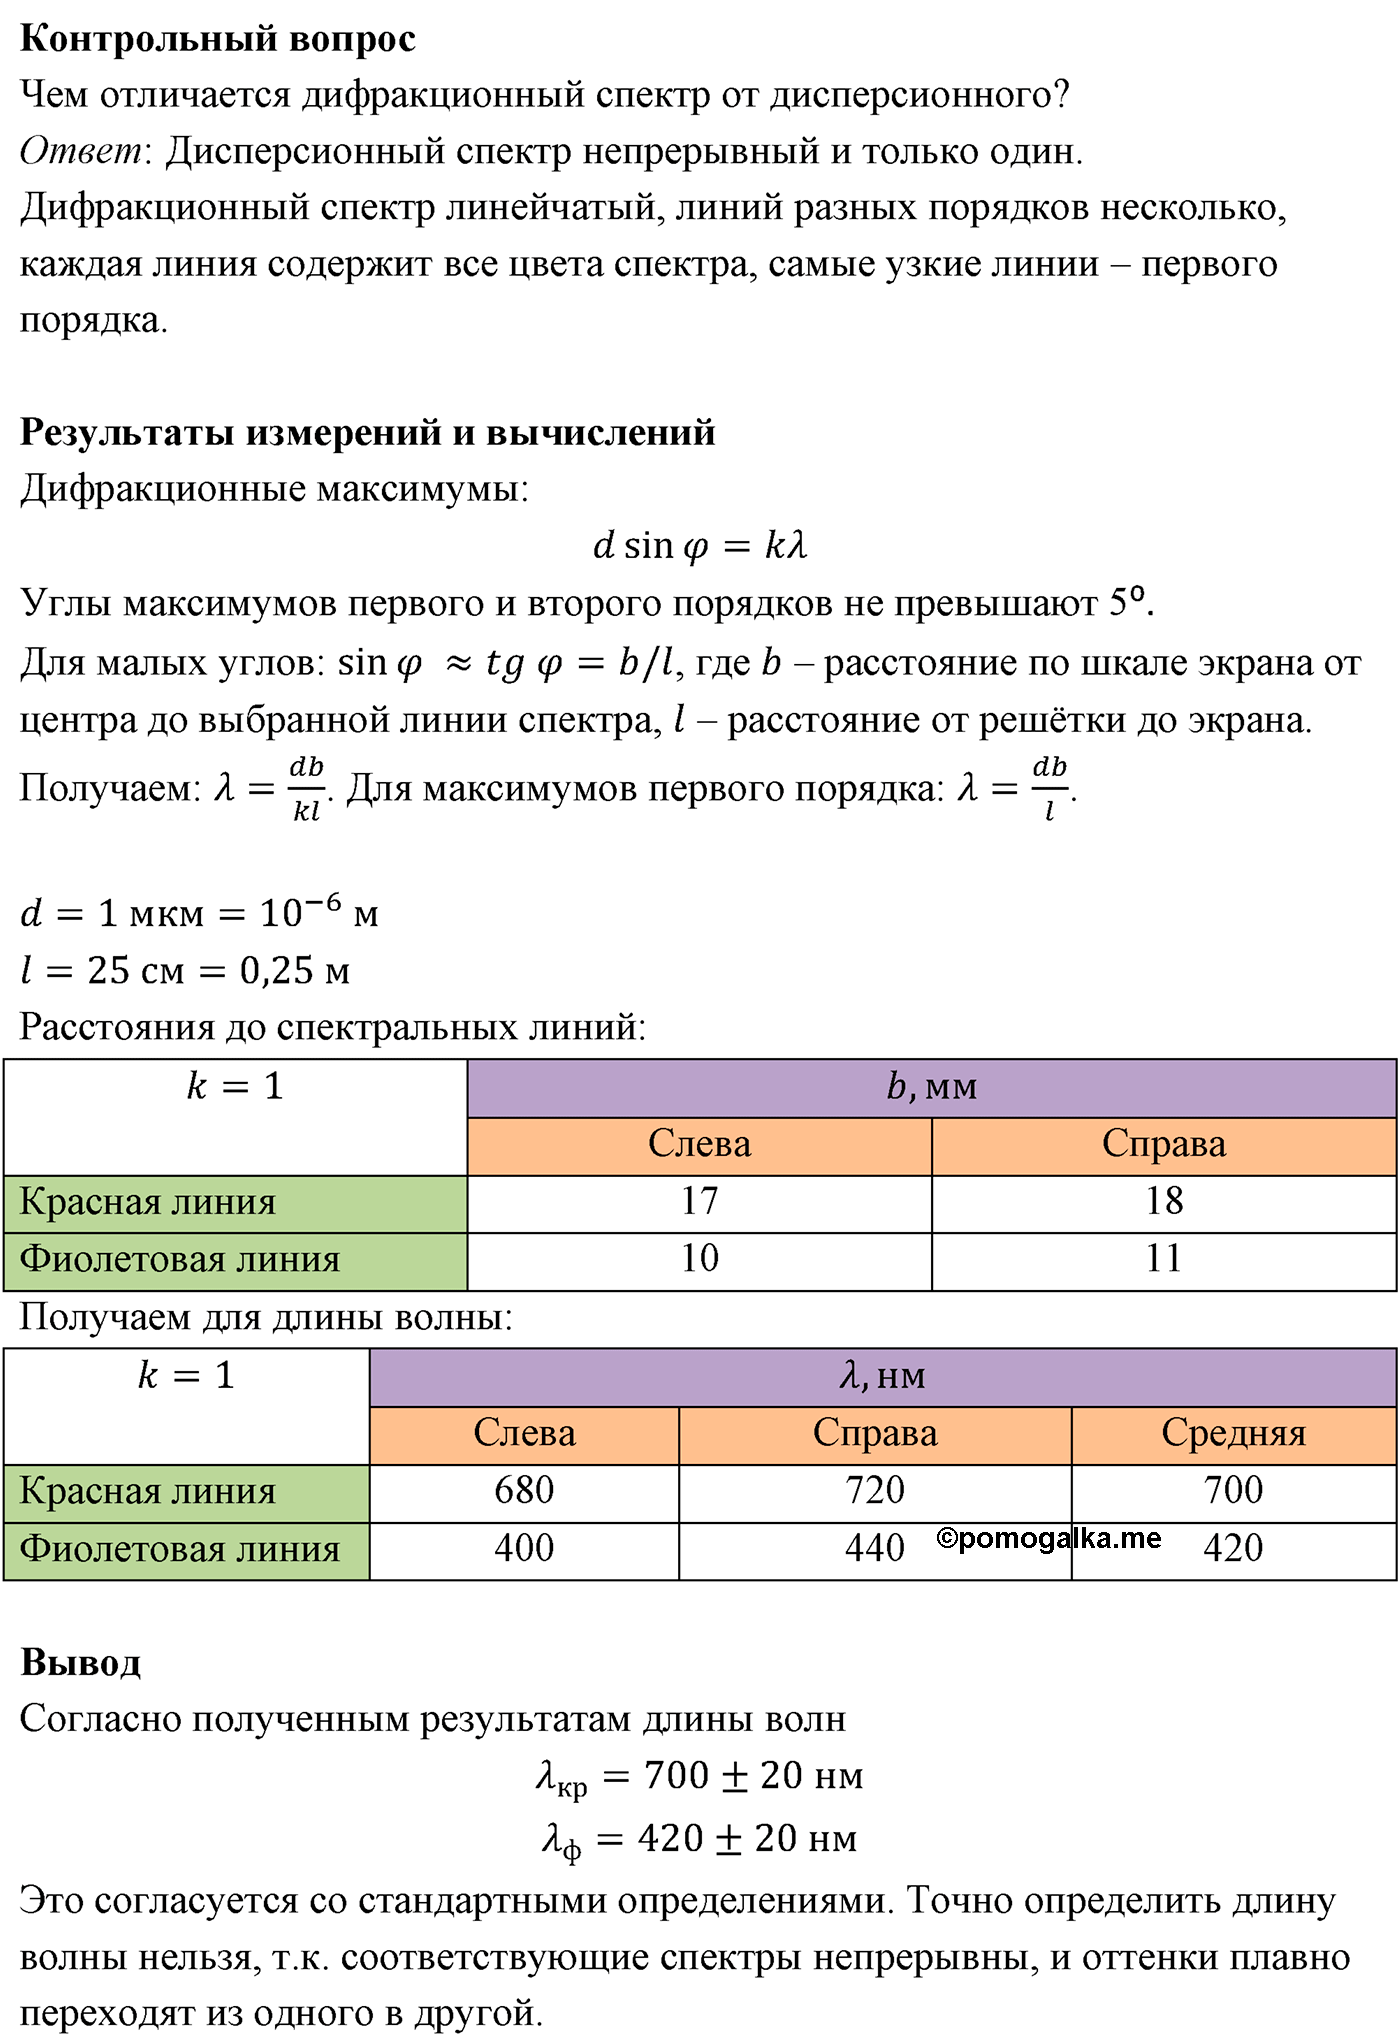 лабораторный опыт №6 физика 11 класс Мякишев